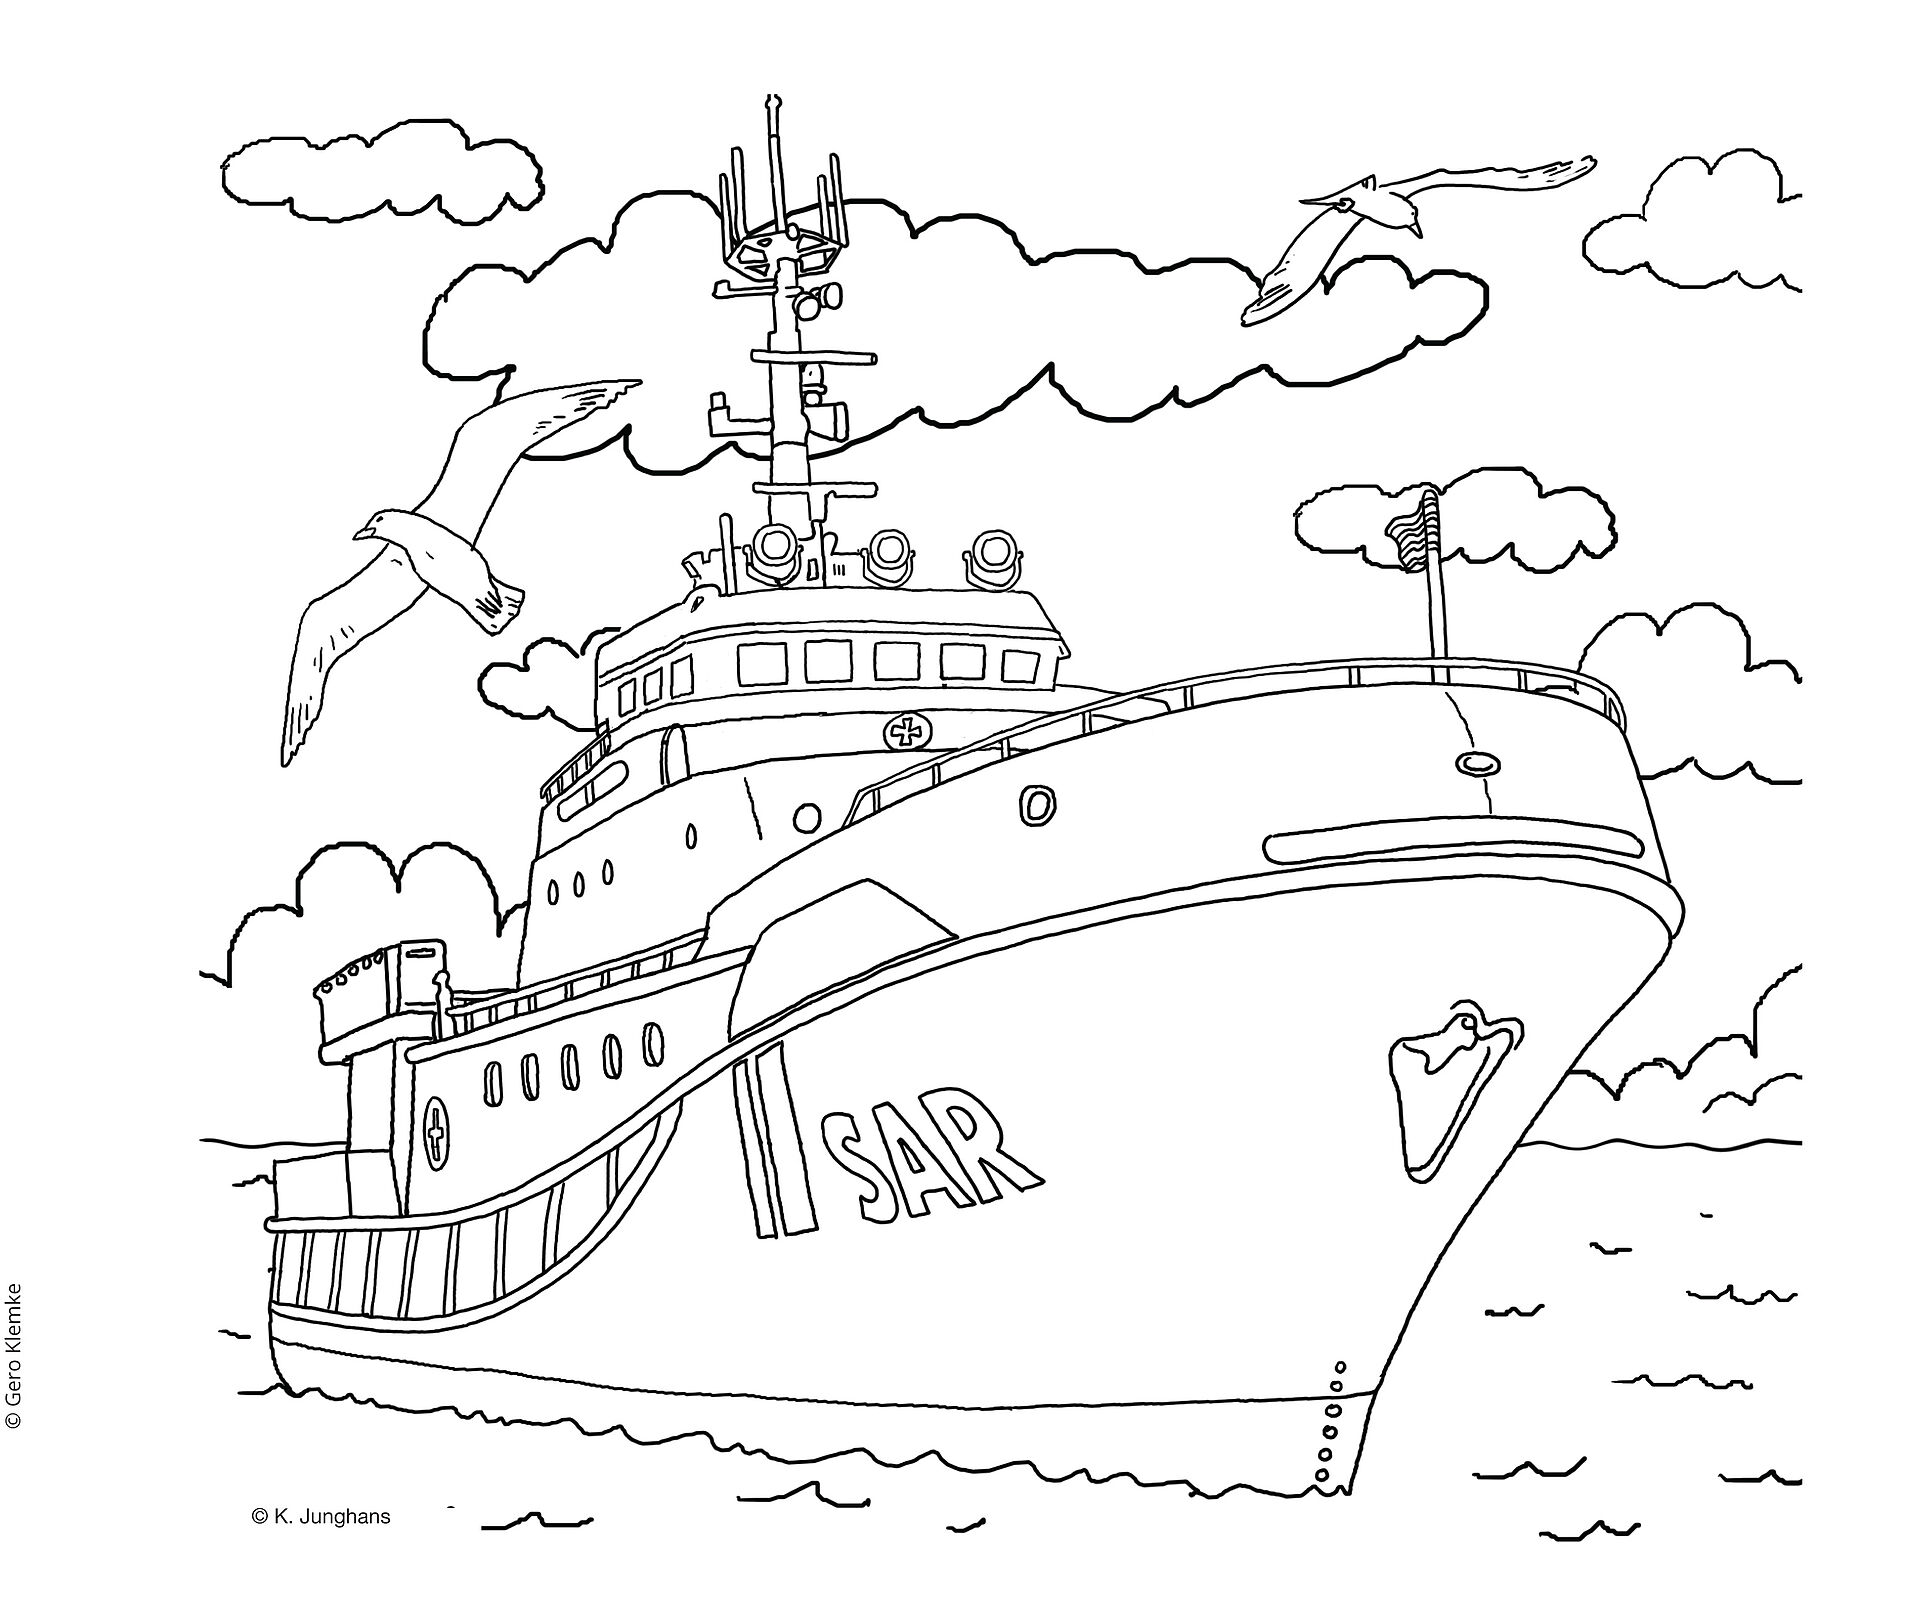 Vorlage eines Ausmalbildes zeigt den Seenotrettungskreuzer HERMANN MARWEDE.